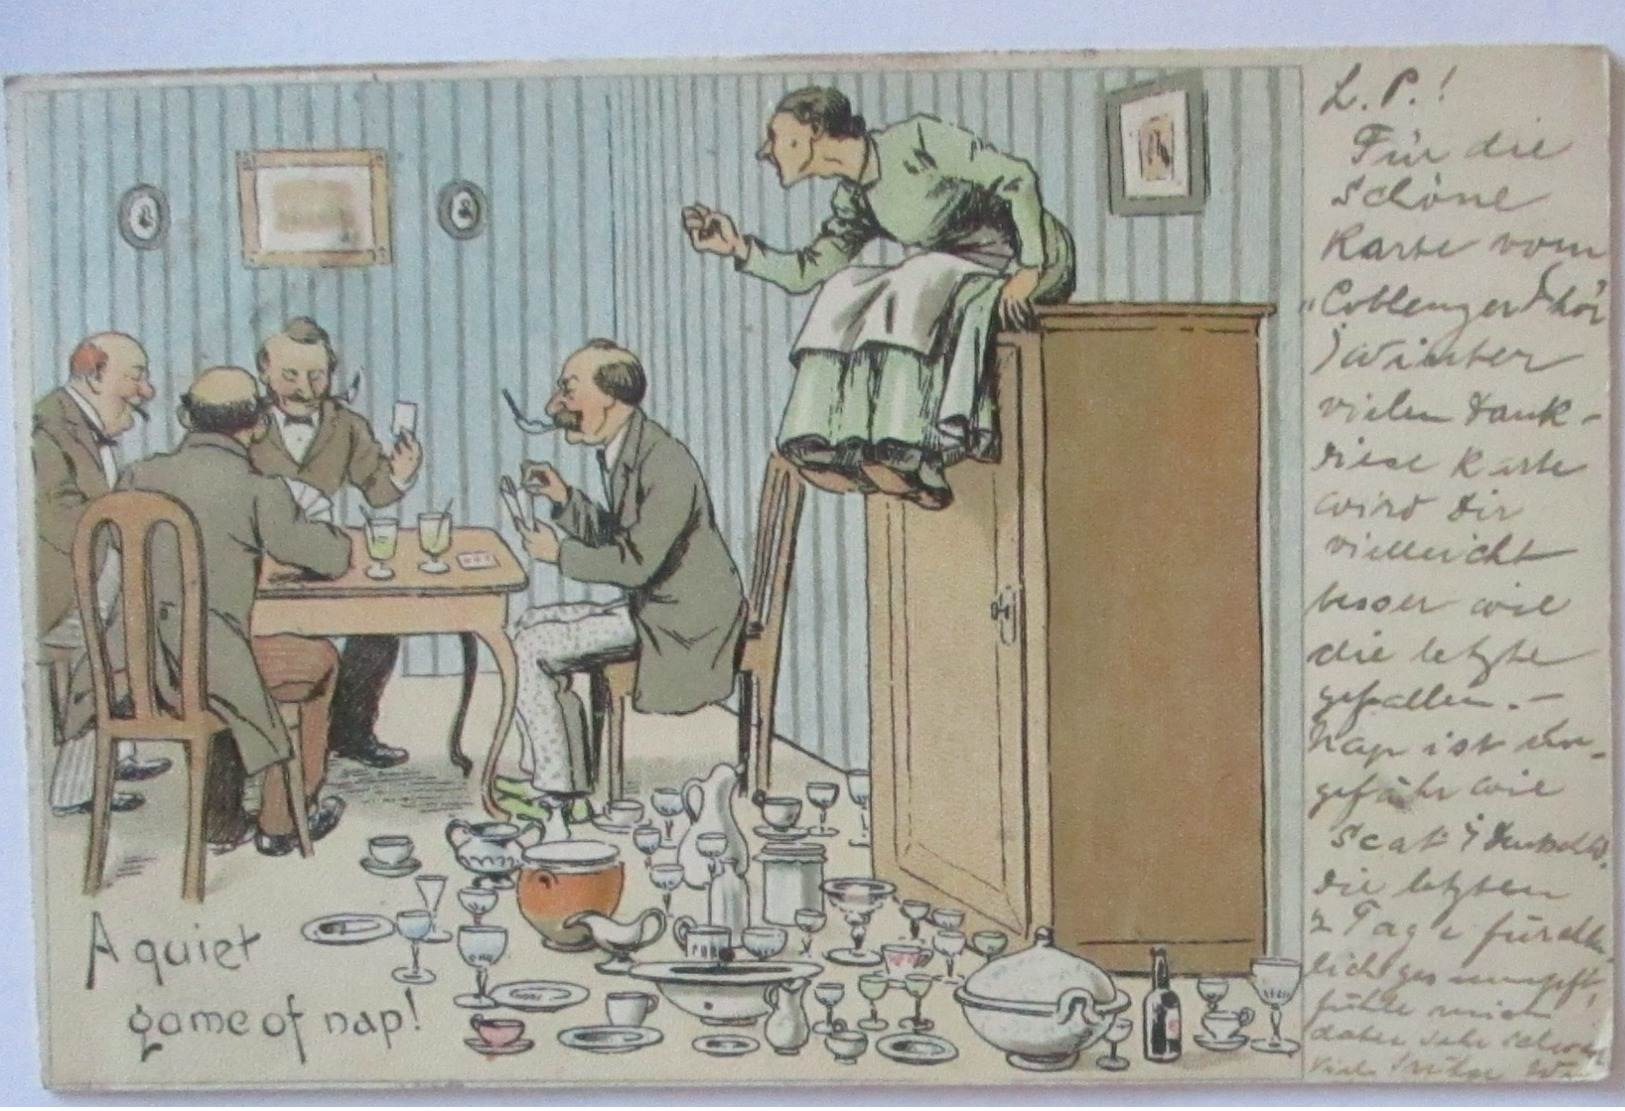 Scherzkarte Männer Beim Kartenspiel, Porzellan, A Quiet Game Of Nap 1899 (71179) - Humour